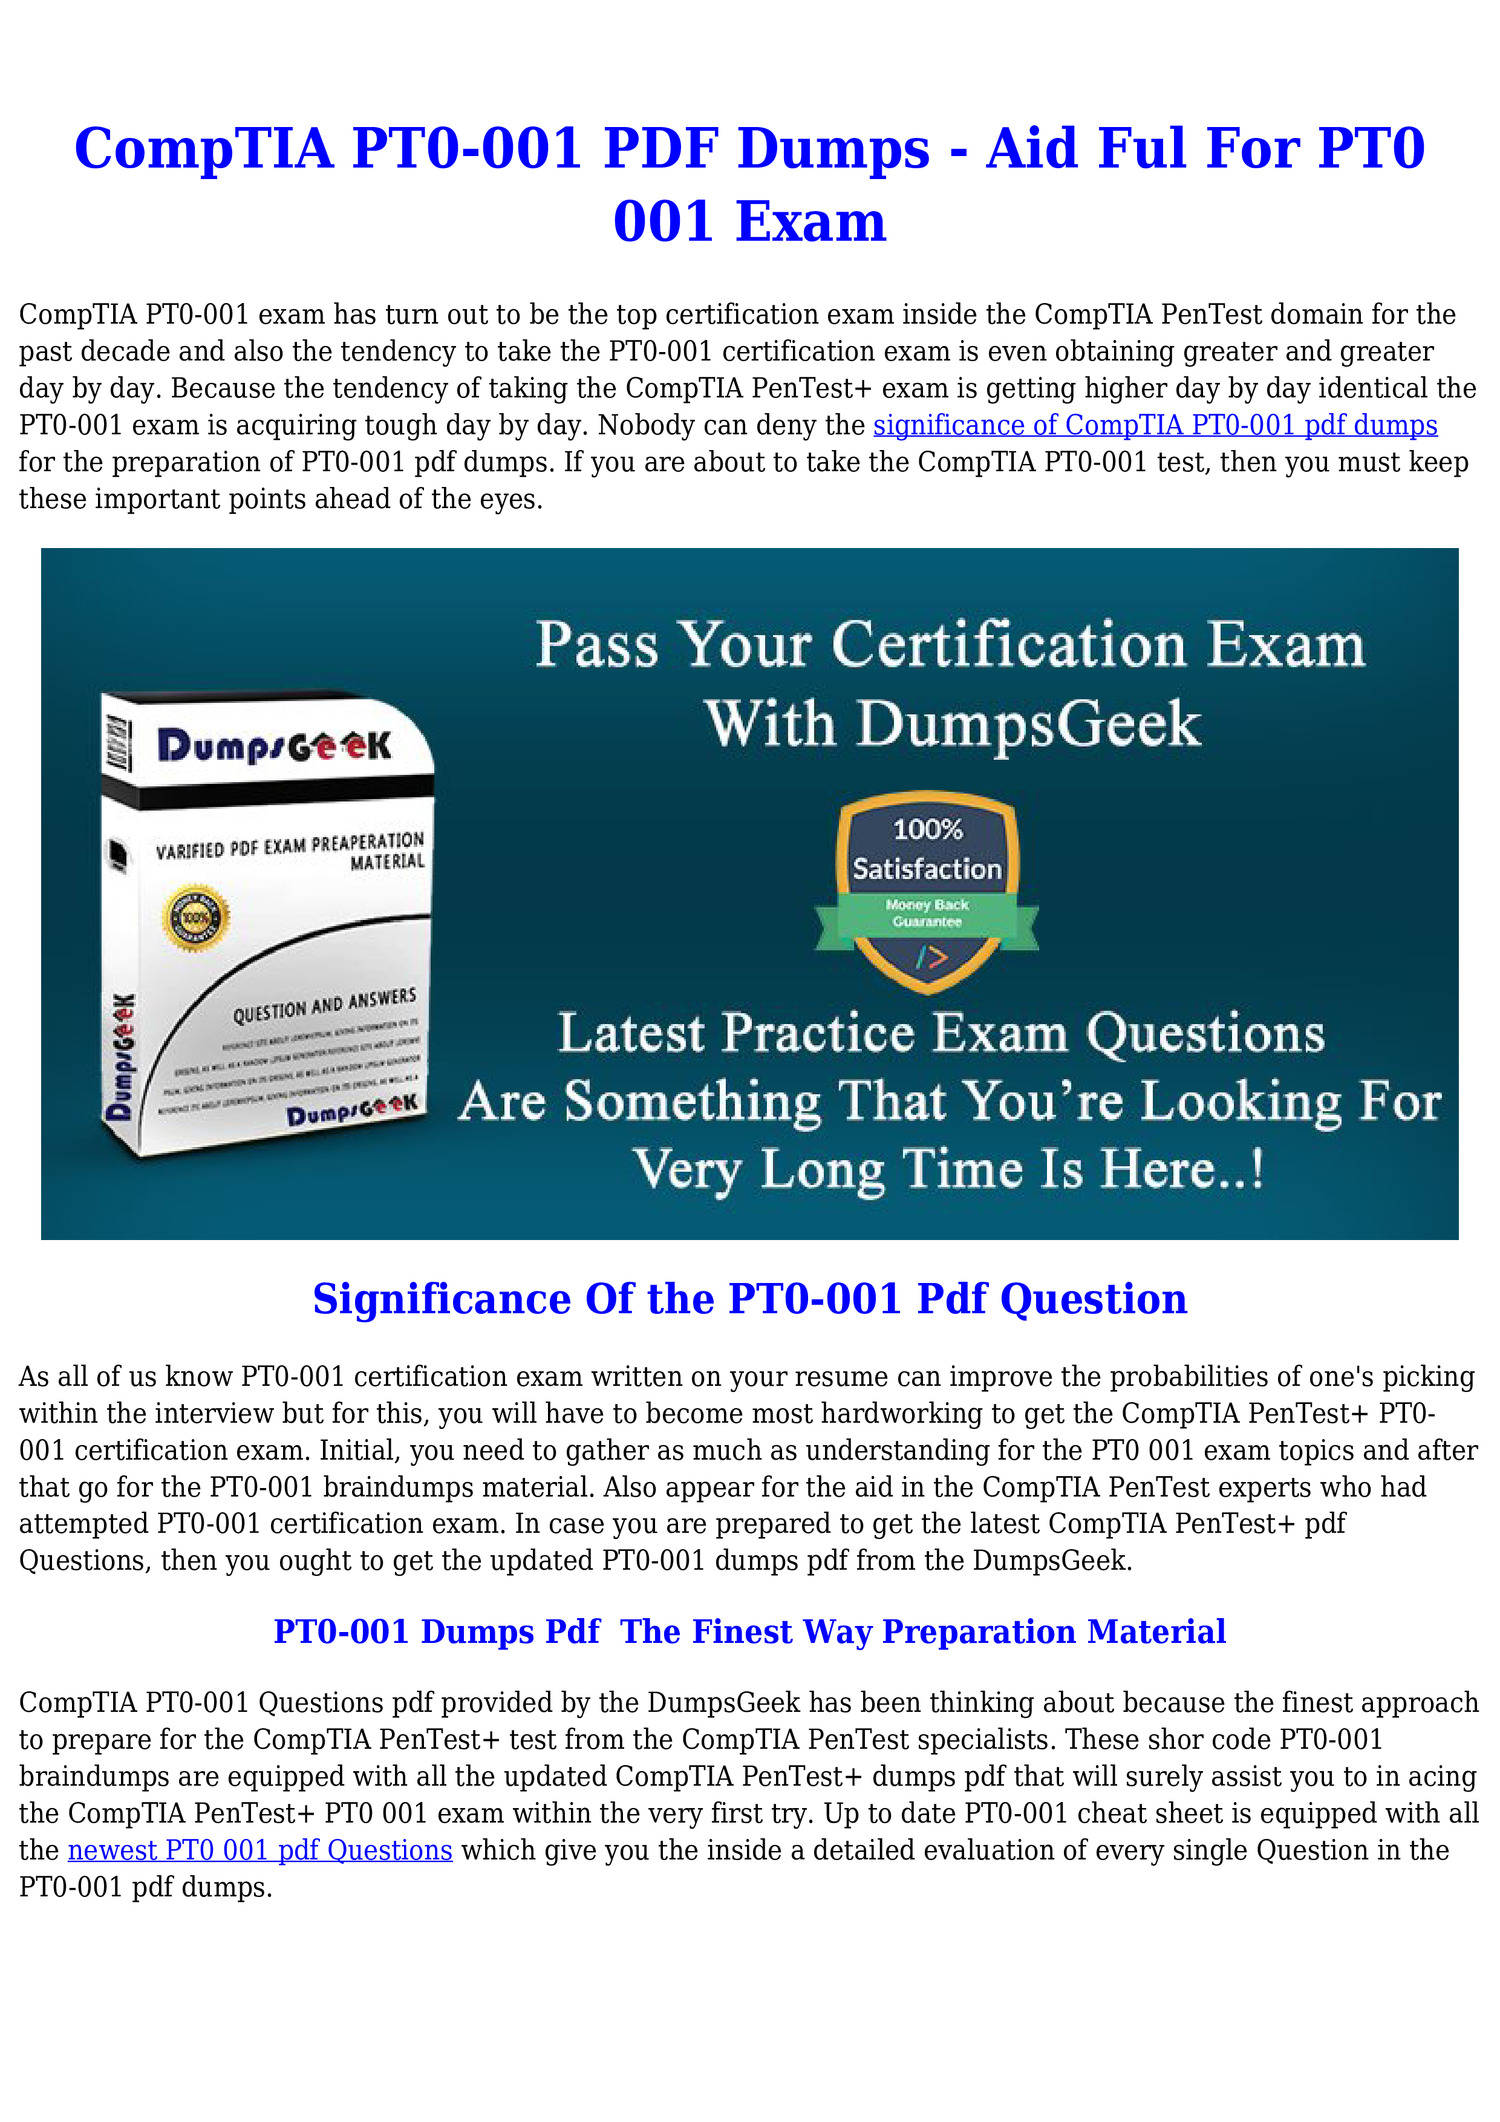 PT0-001 Exam Cram Review